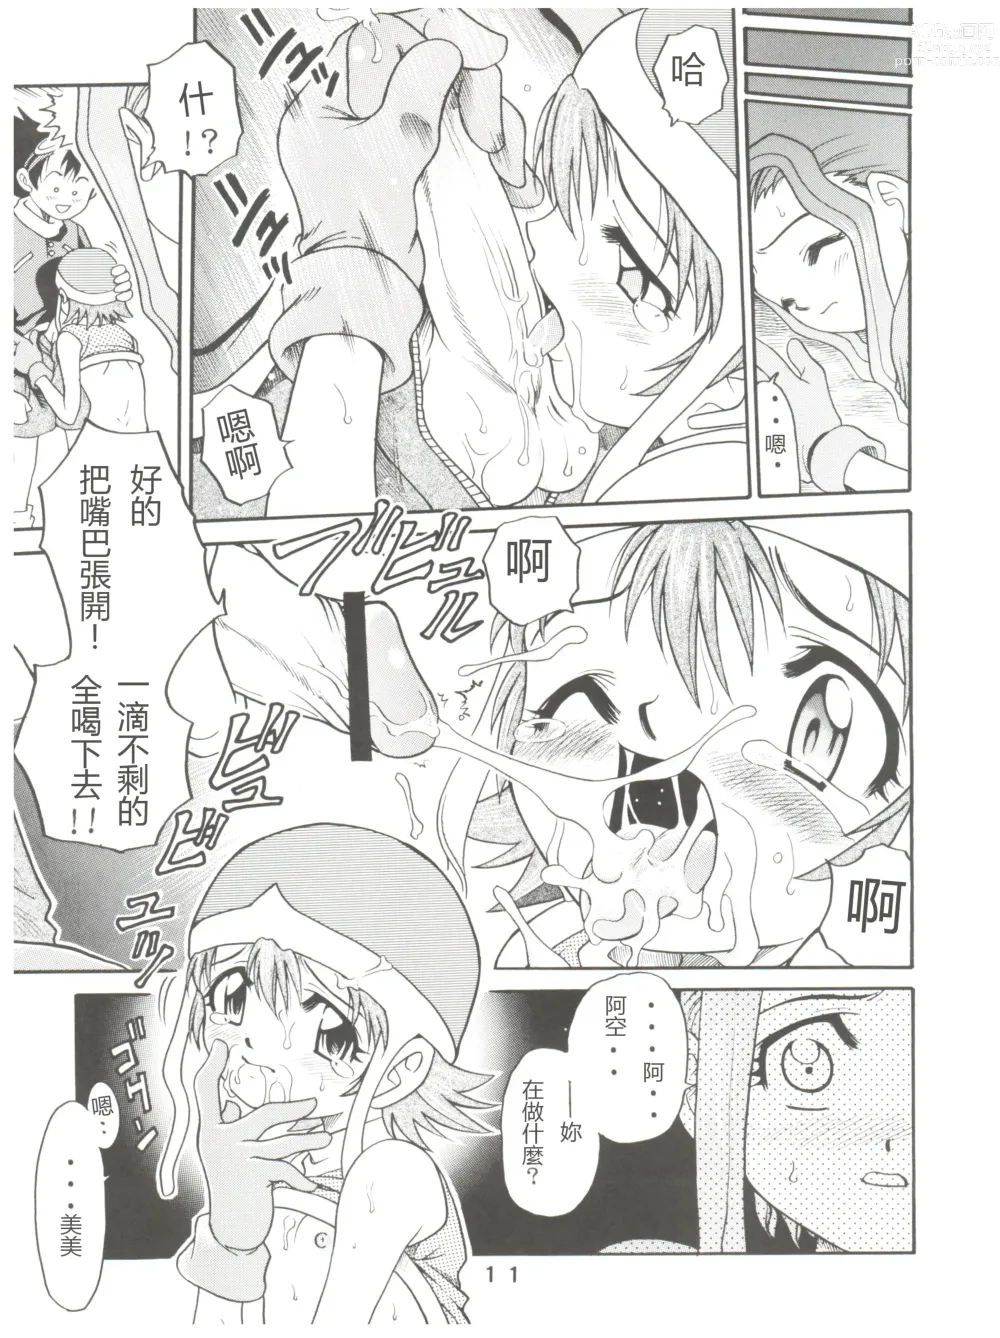 Page 11 of doujinshi Pichuu Pikachuu Daigyakusatsu